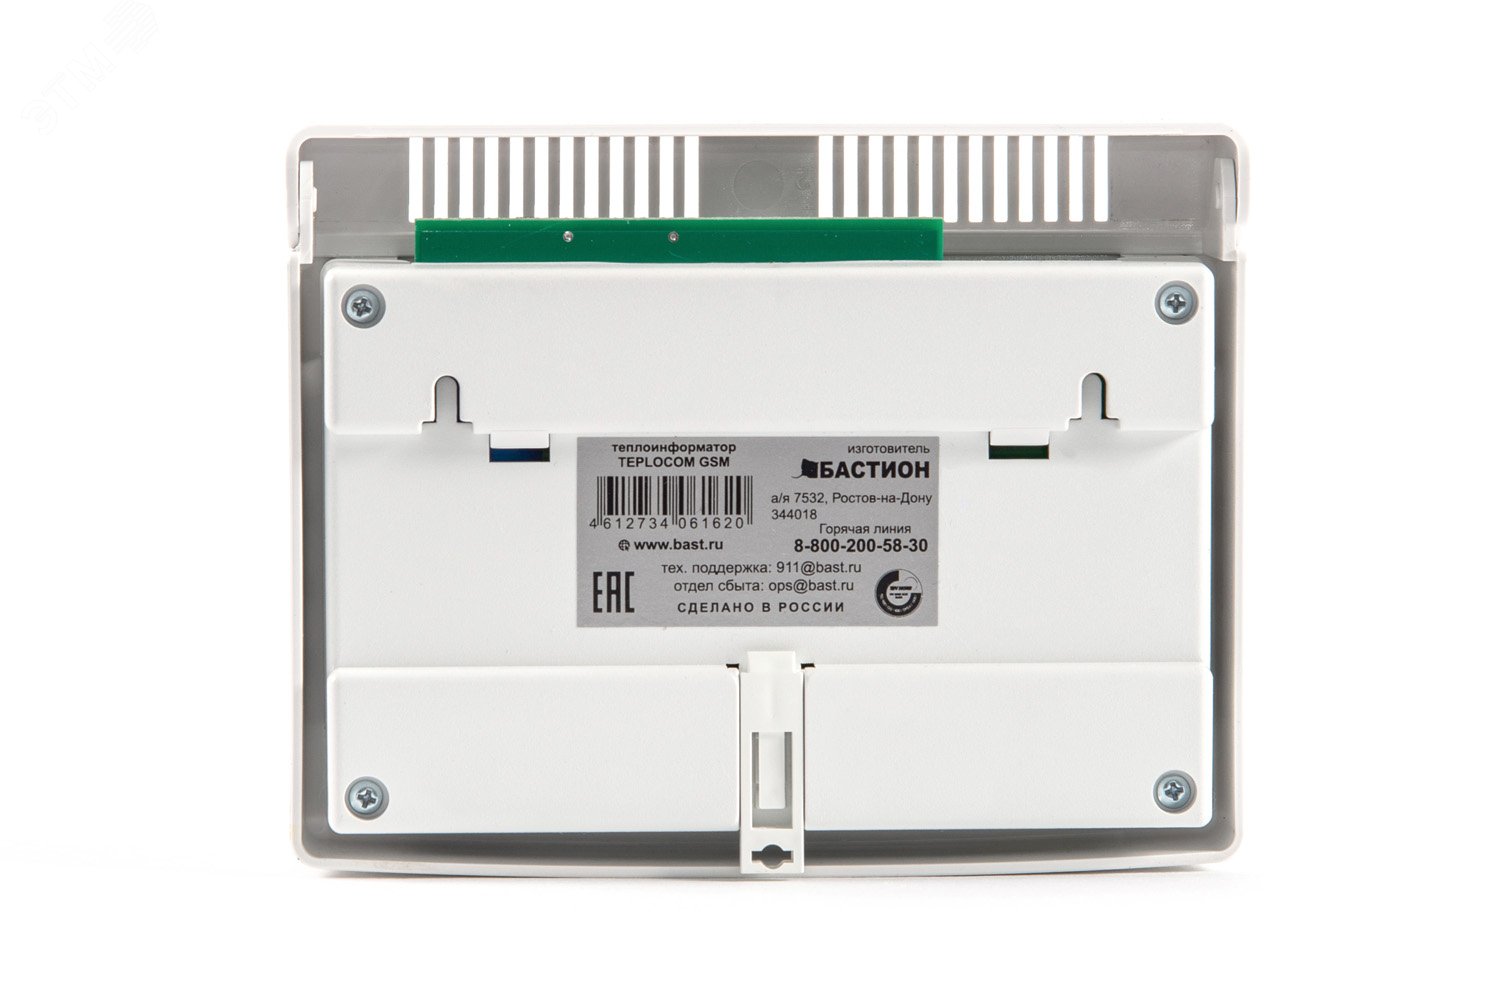 Теплоинформатор Teplocom GSM  контроль и          управление системой отопления через GSM 333 Бастион - превью 4